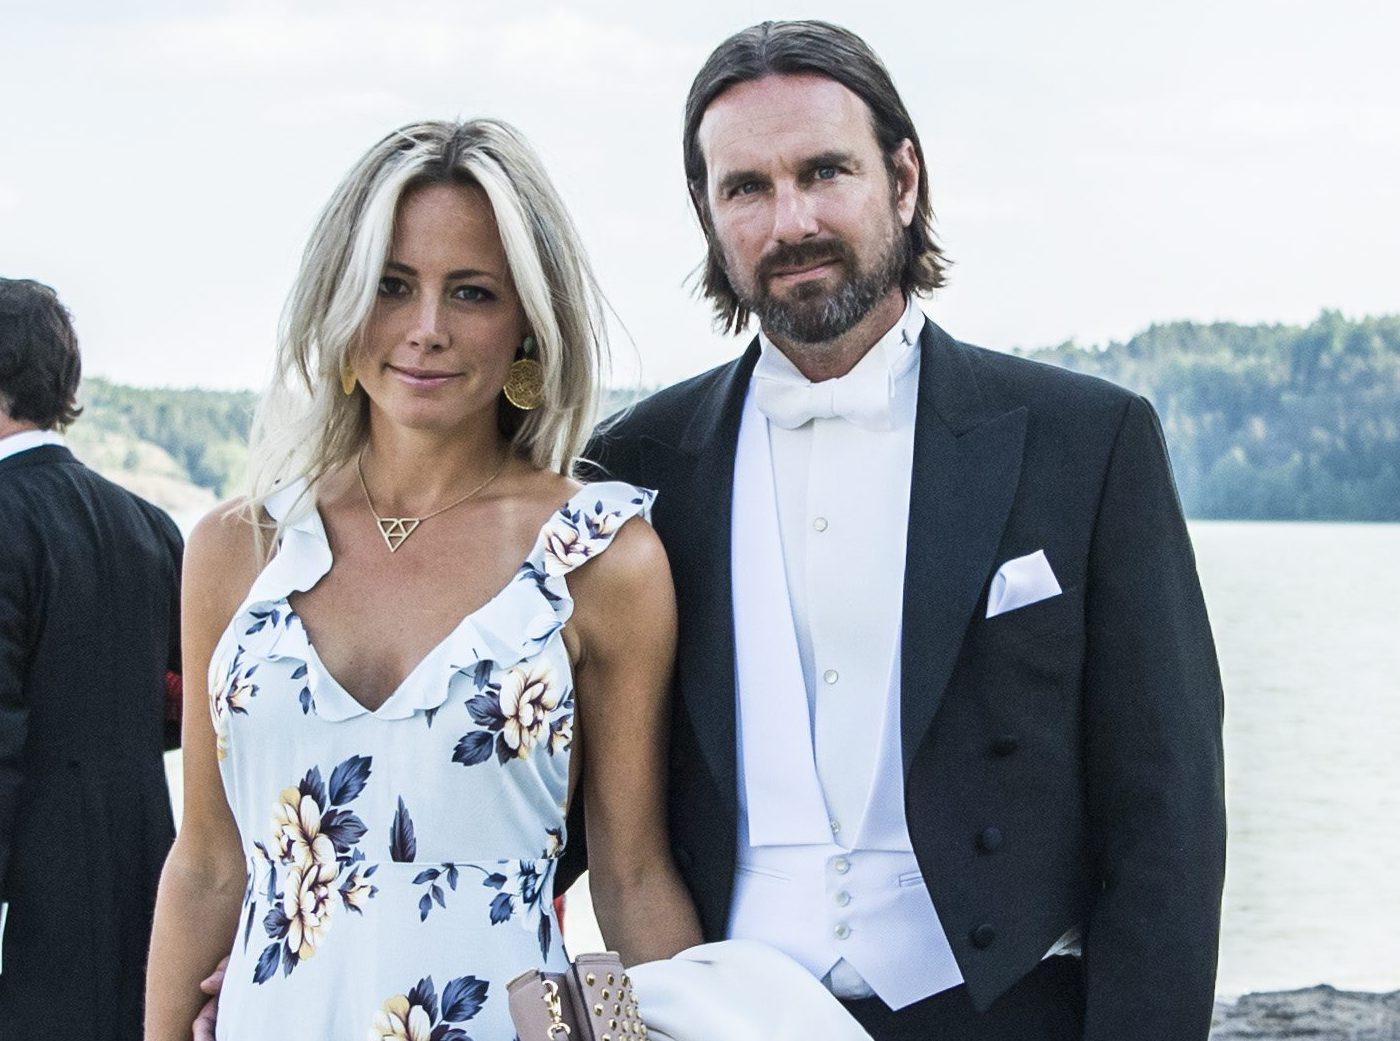 Carolina Neurath och Niclas Engsäll ansökte om skilsmässa i höstas.